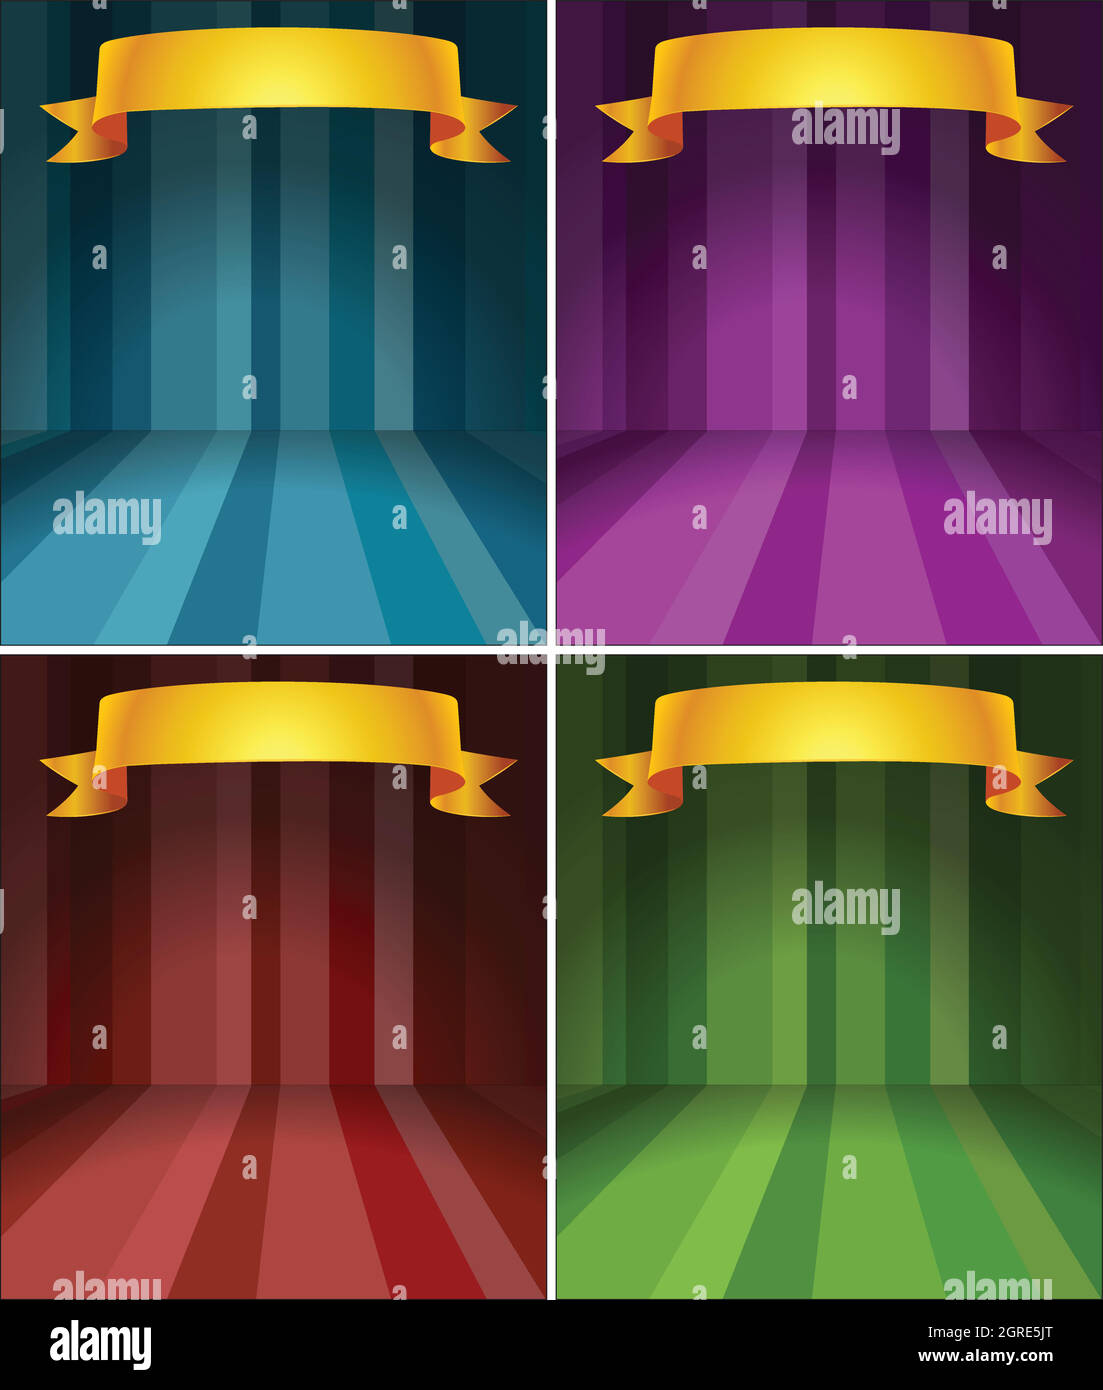 Quatre niveaux de couleurs différents avec ruban Illustration de Vecteur